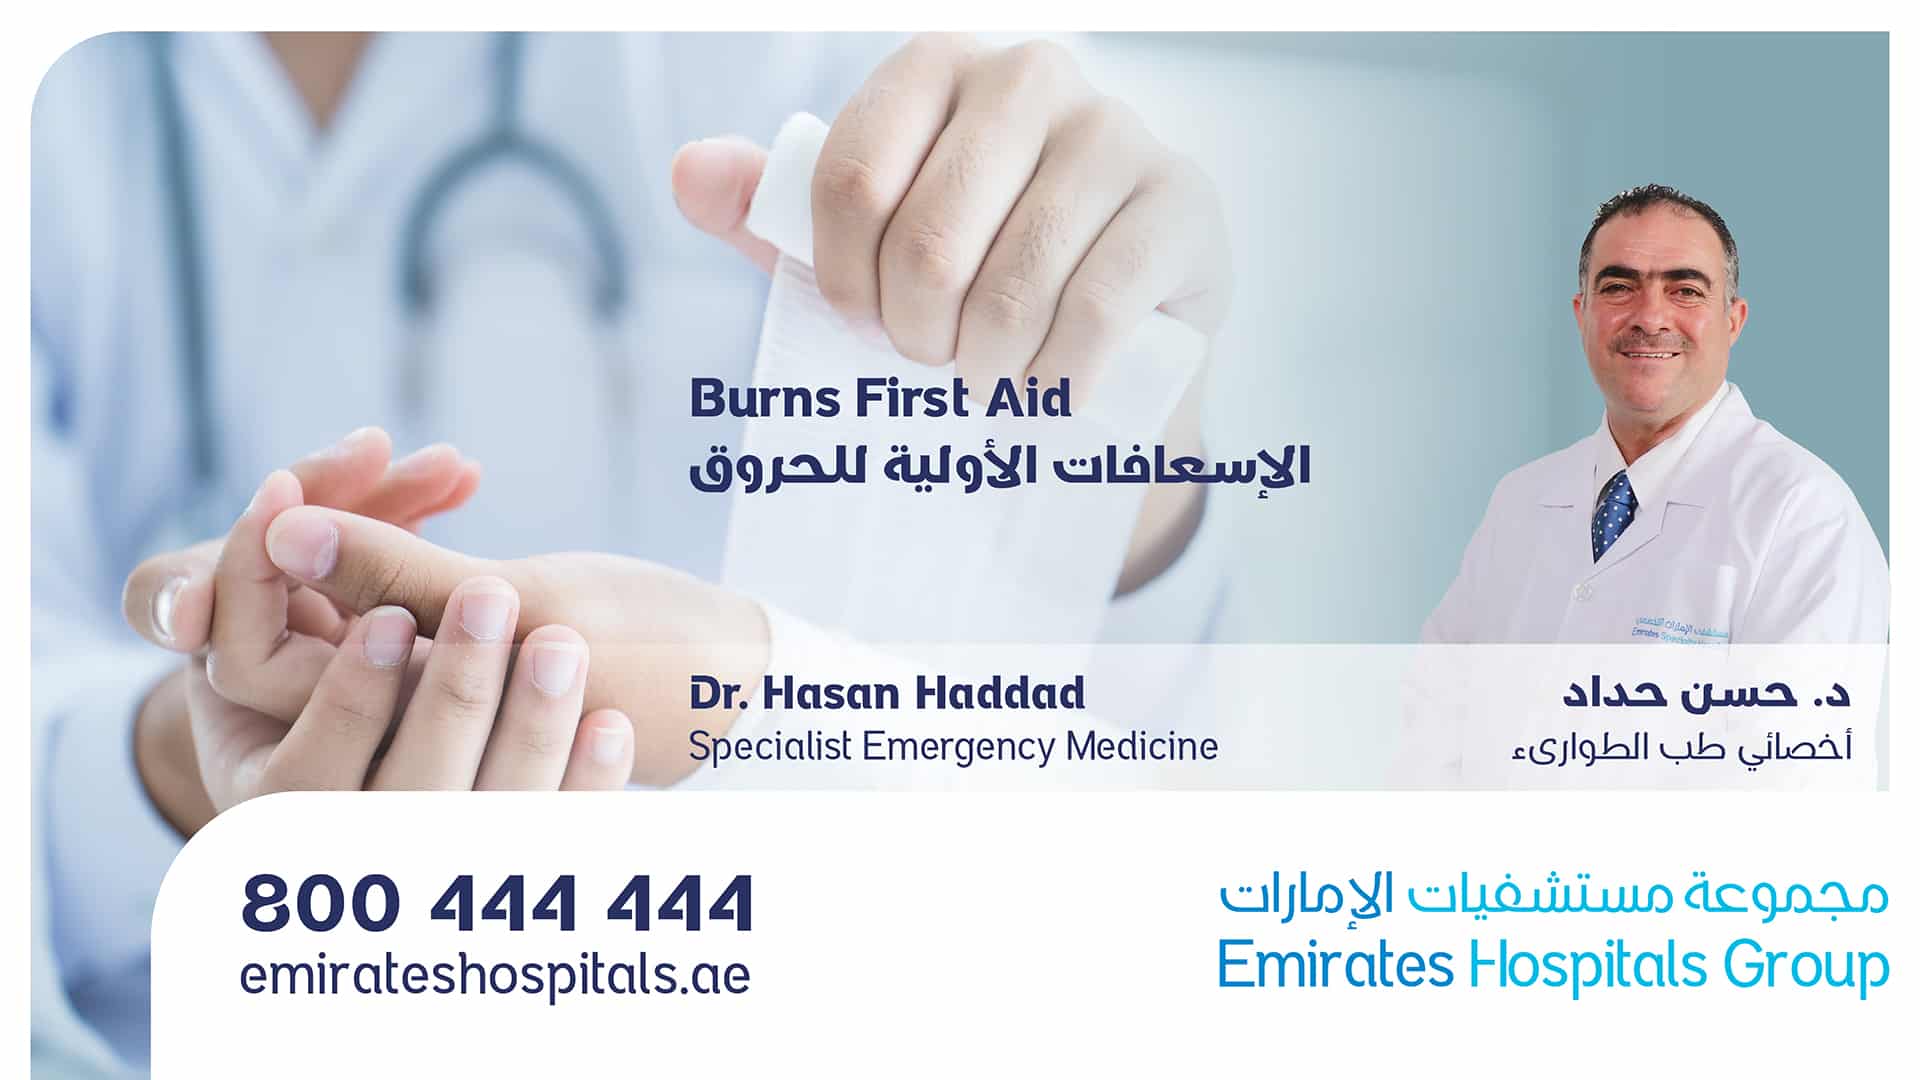 Burns First Aid - Dr. Hasan Haddad Specialist Emergency Medicine